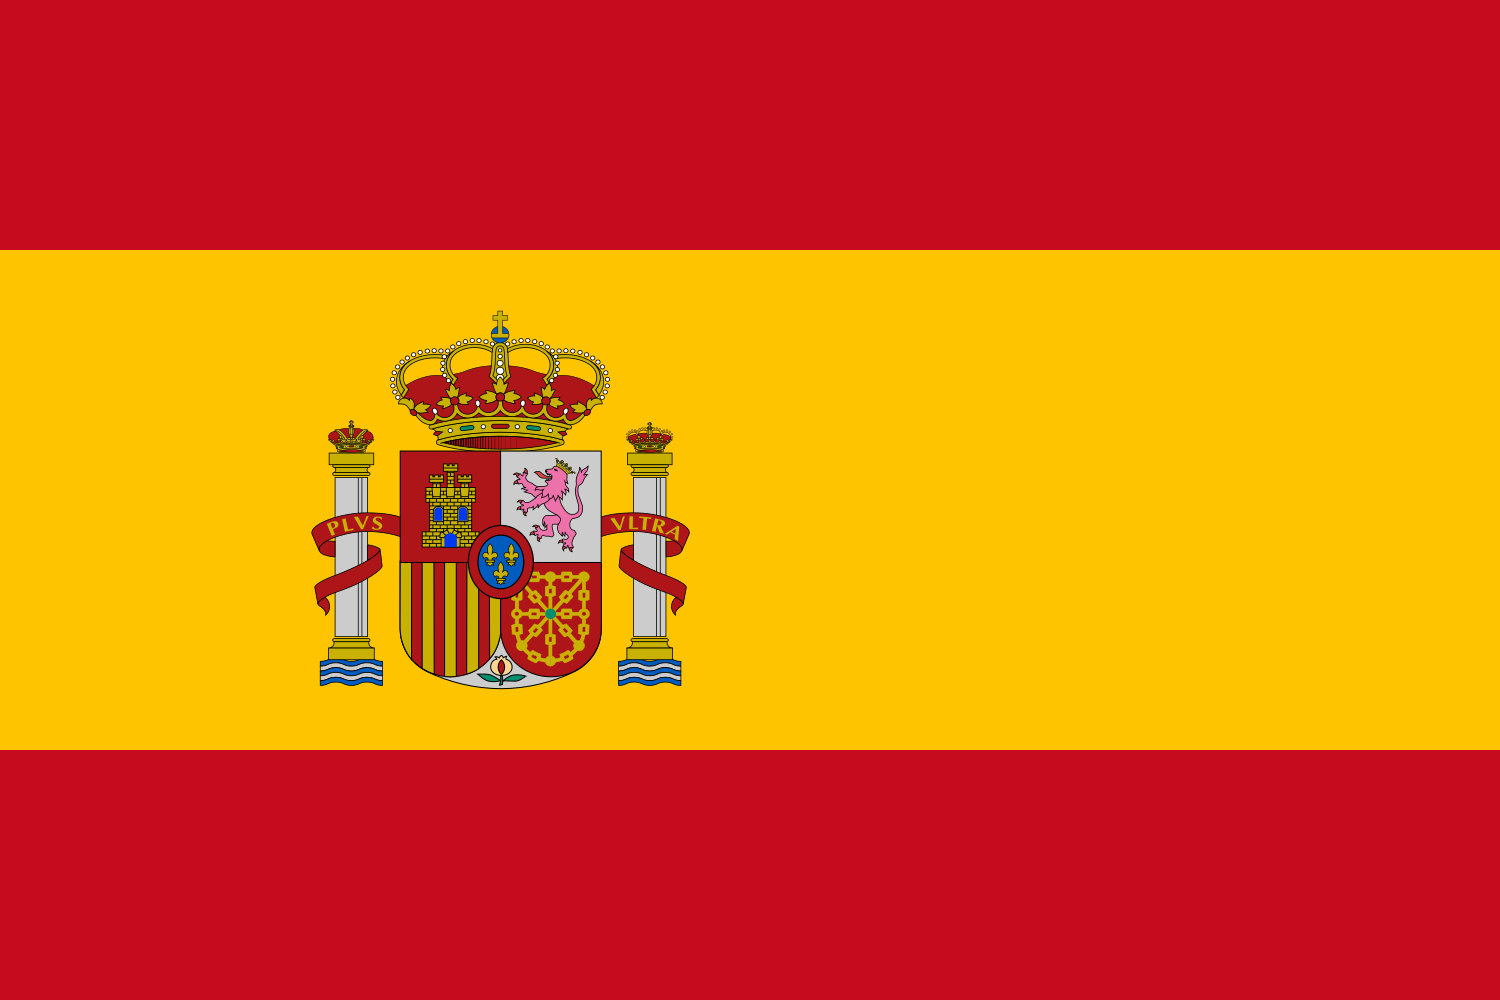 स्पेन का झंडा